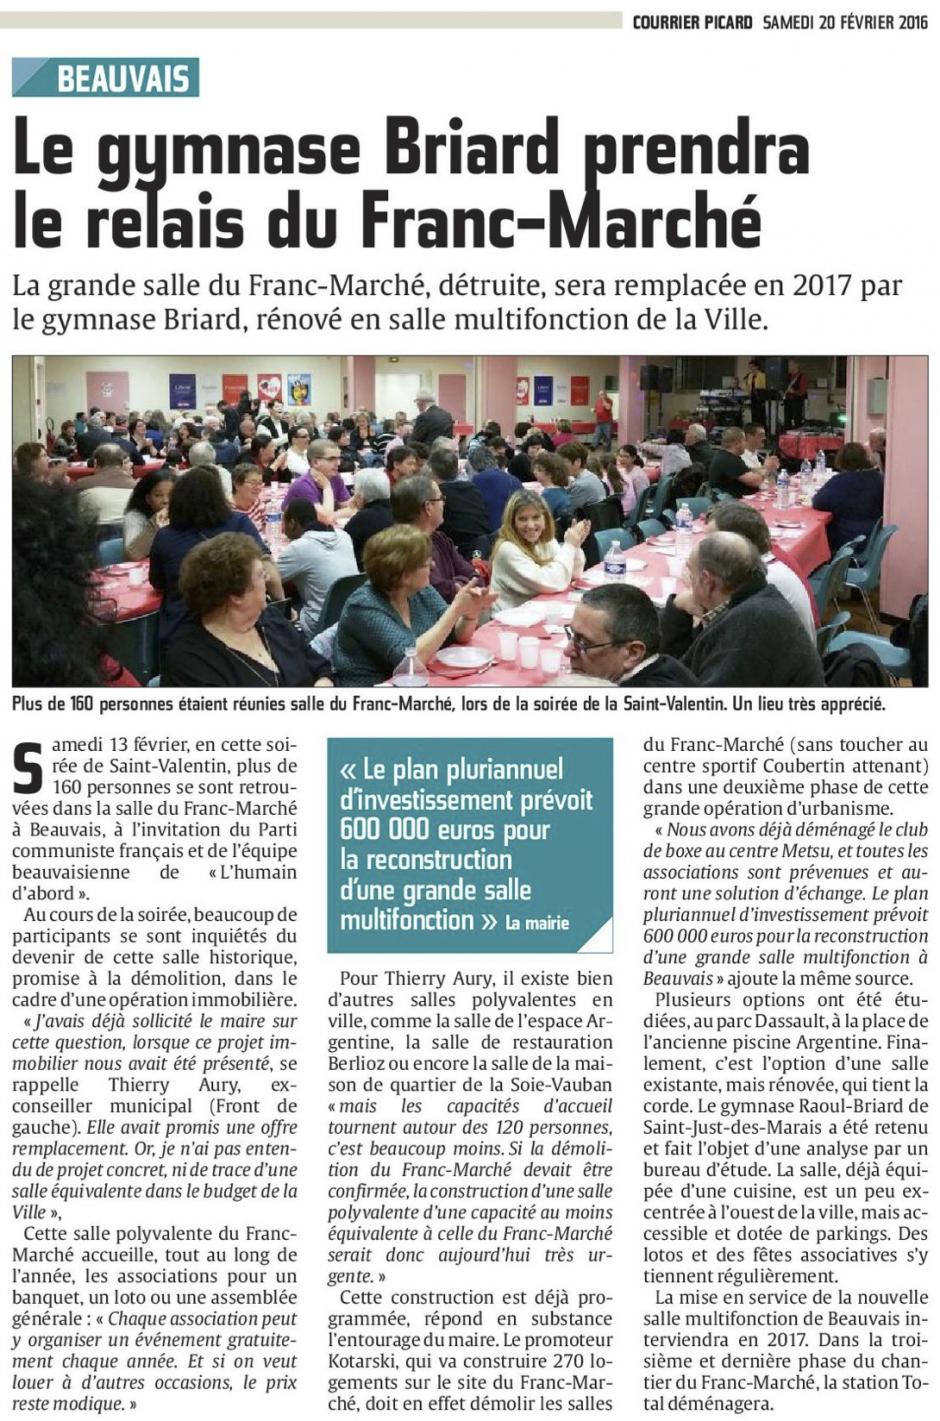 20160220-CP-Beauvais-Le gymnase Briard prendra le relais du Franc-Marché